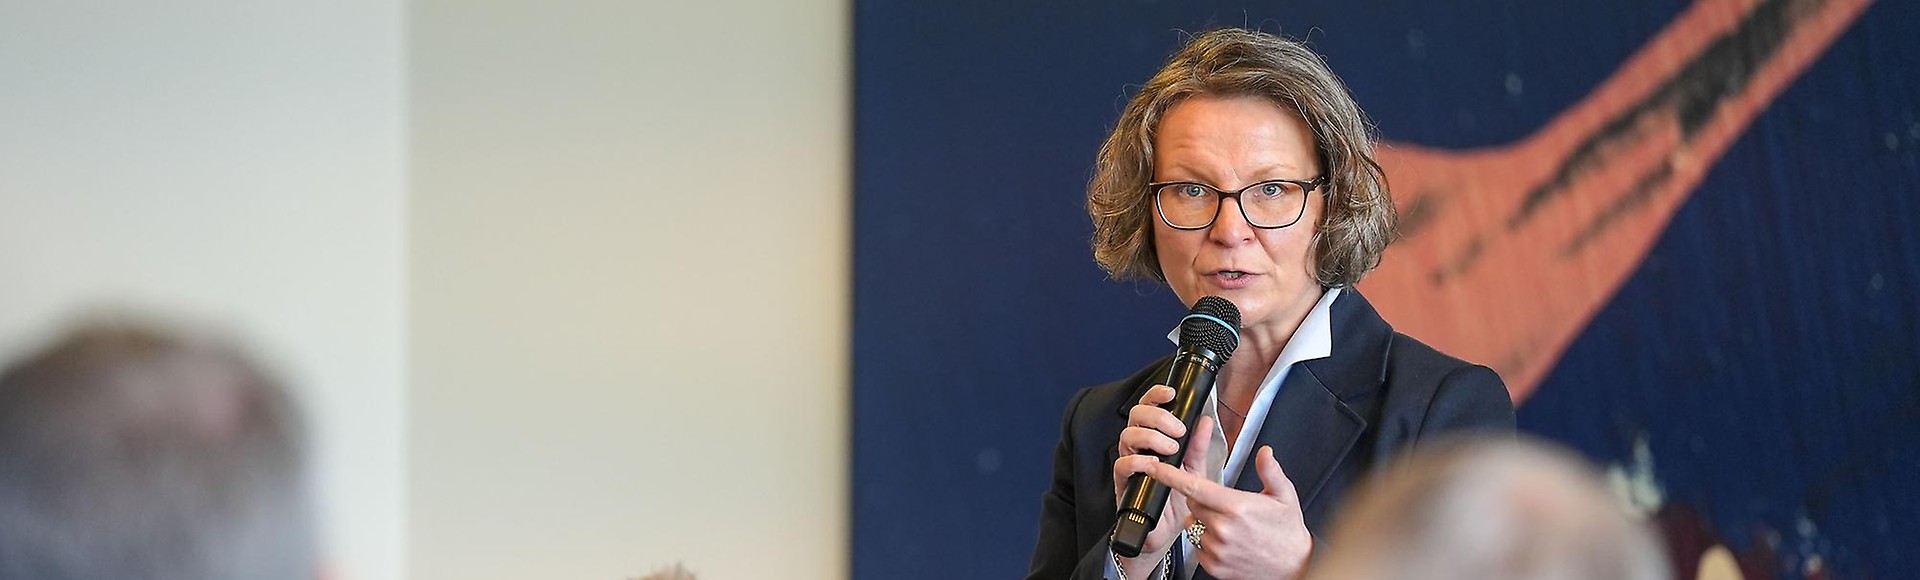 Ministerin Ina Scharrenbach zu Gast